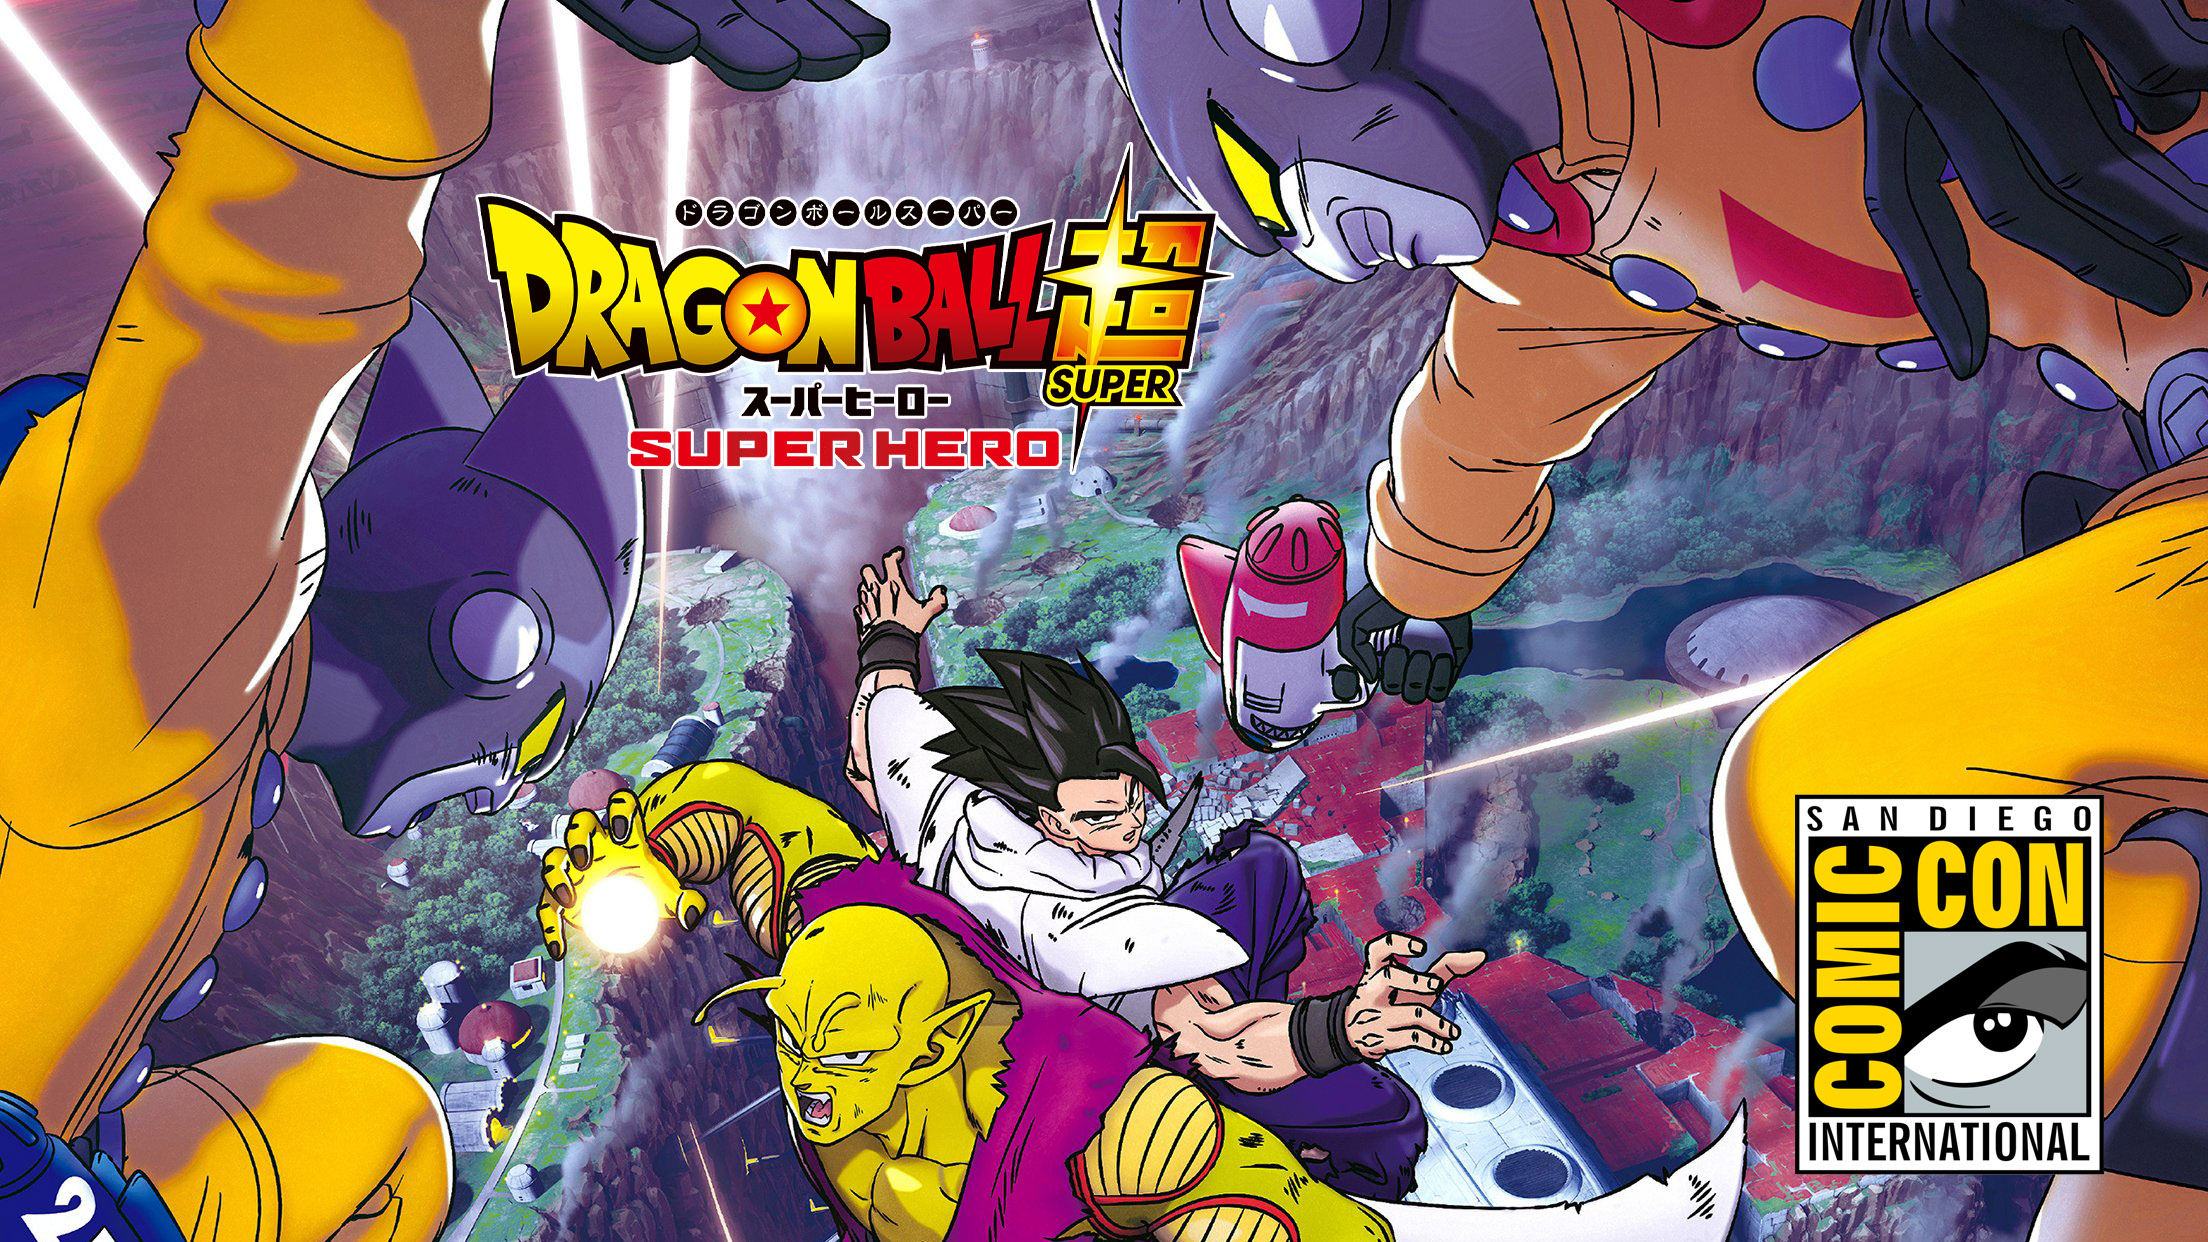 Dragon Ball Super: Super Hero SDCC